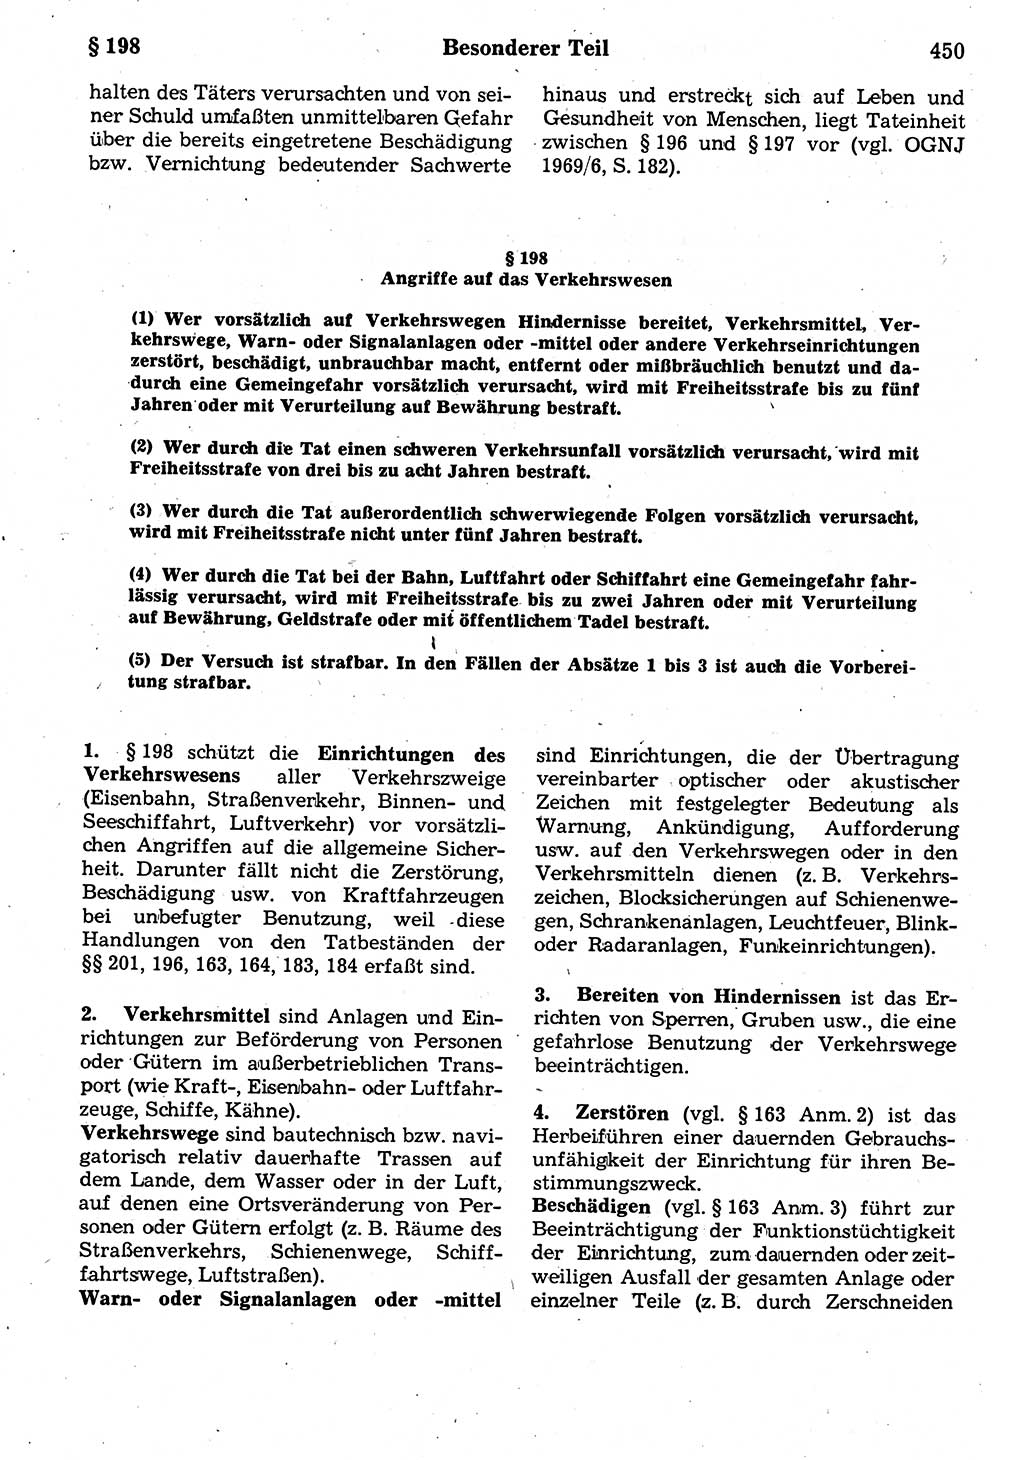 Strafrecht der Deutschen Demokratischen Republik (DDR), Kommentar zum Strafgesetzbuch (StGB) 1987, Seite 450 (Strafr. DDR Komm. StGB 1987, S. 450)